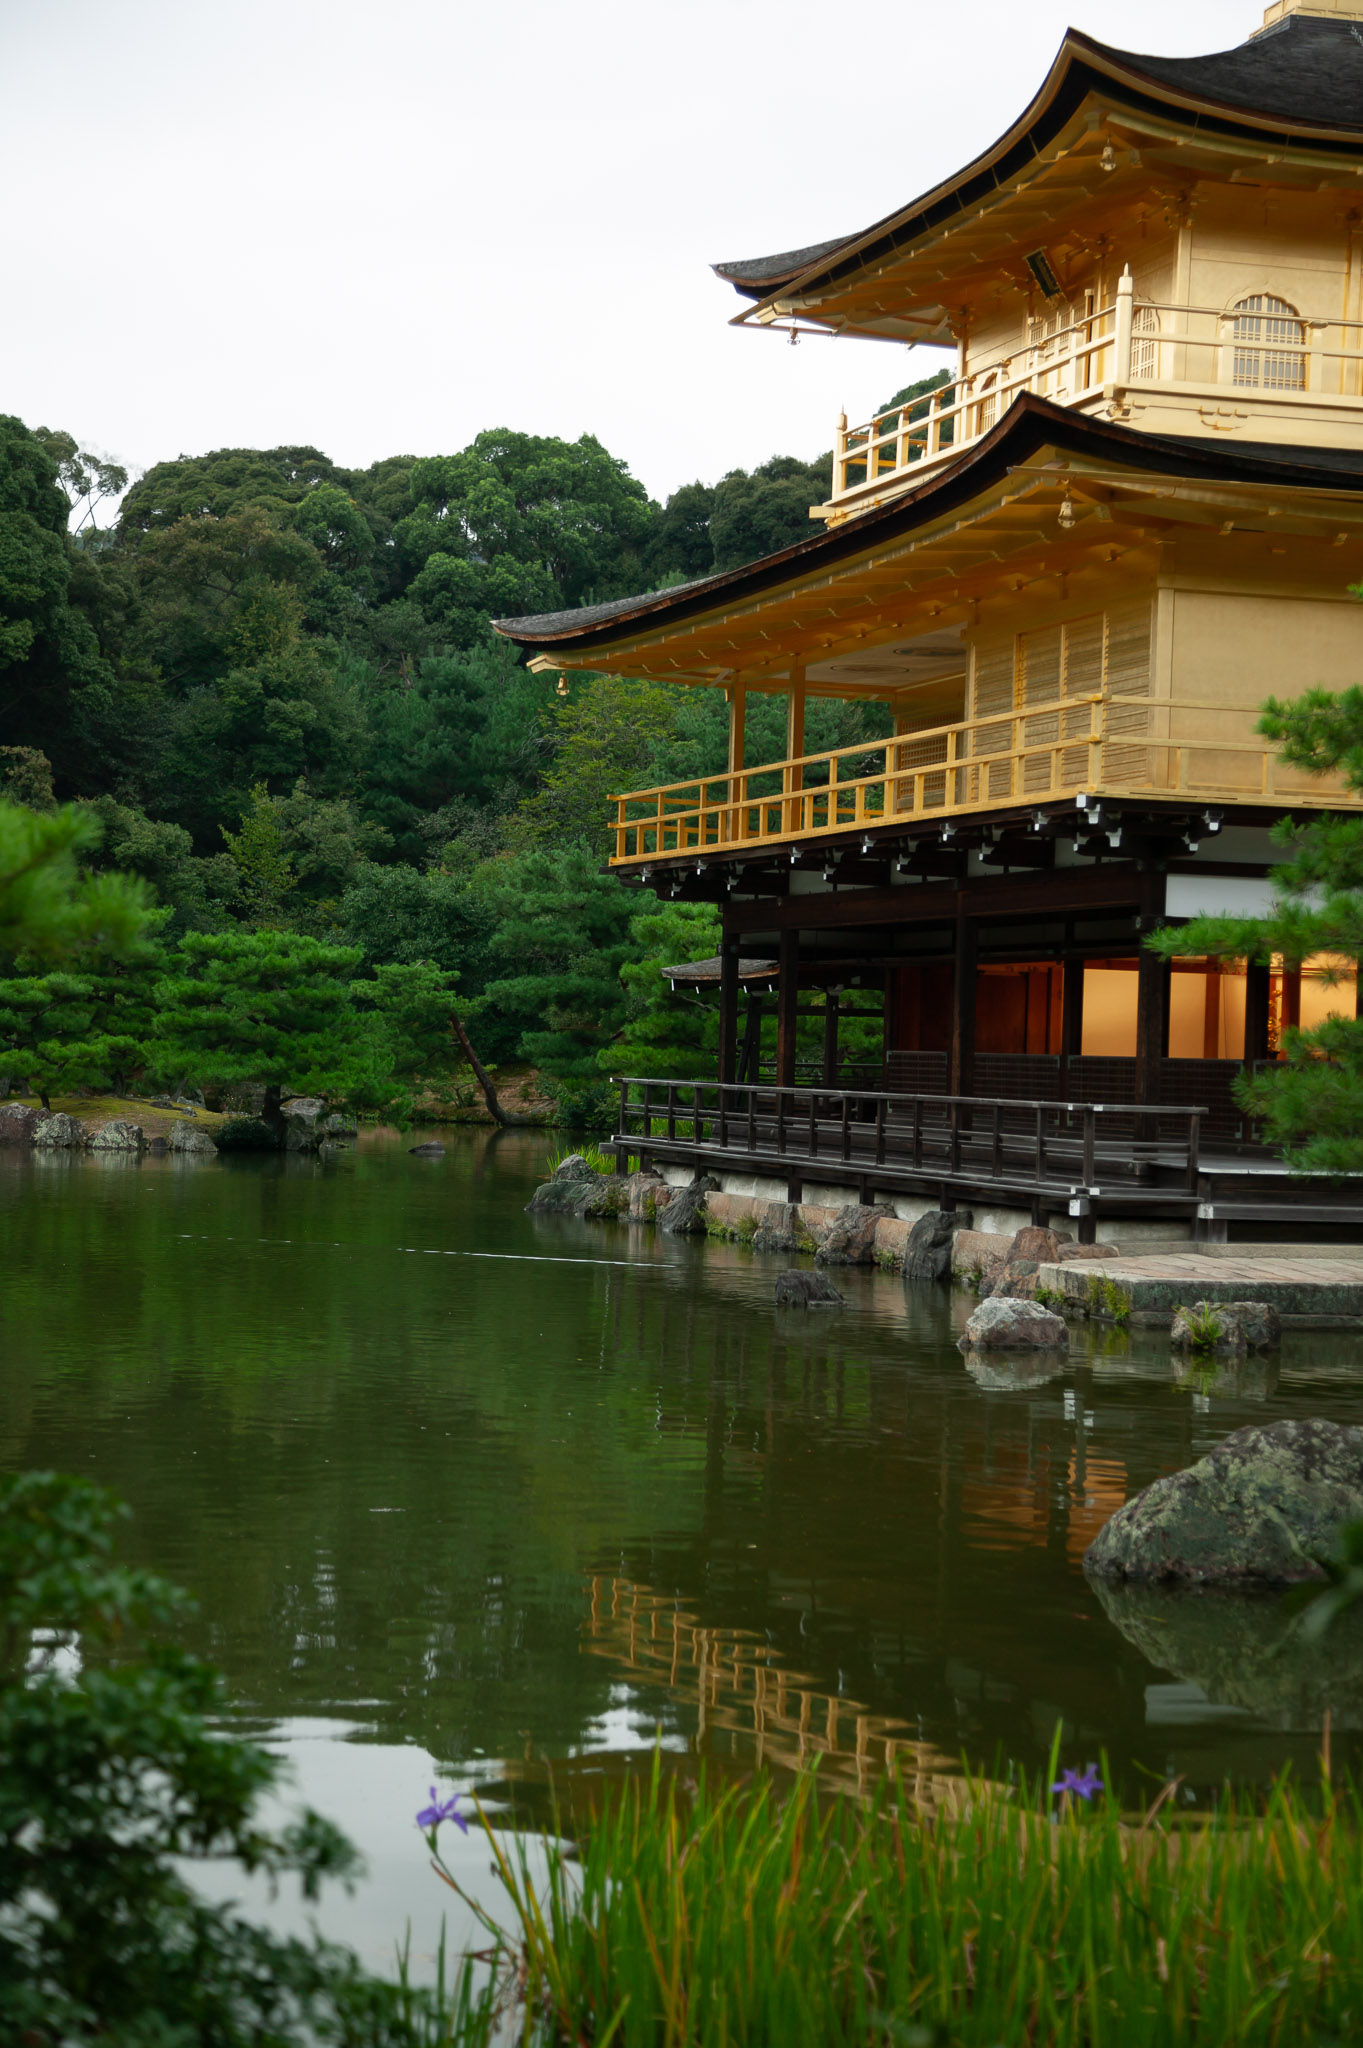 Kinkakuji Temple (Golden Pavilion), part of Rokuonji Temple